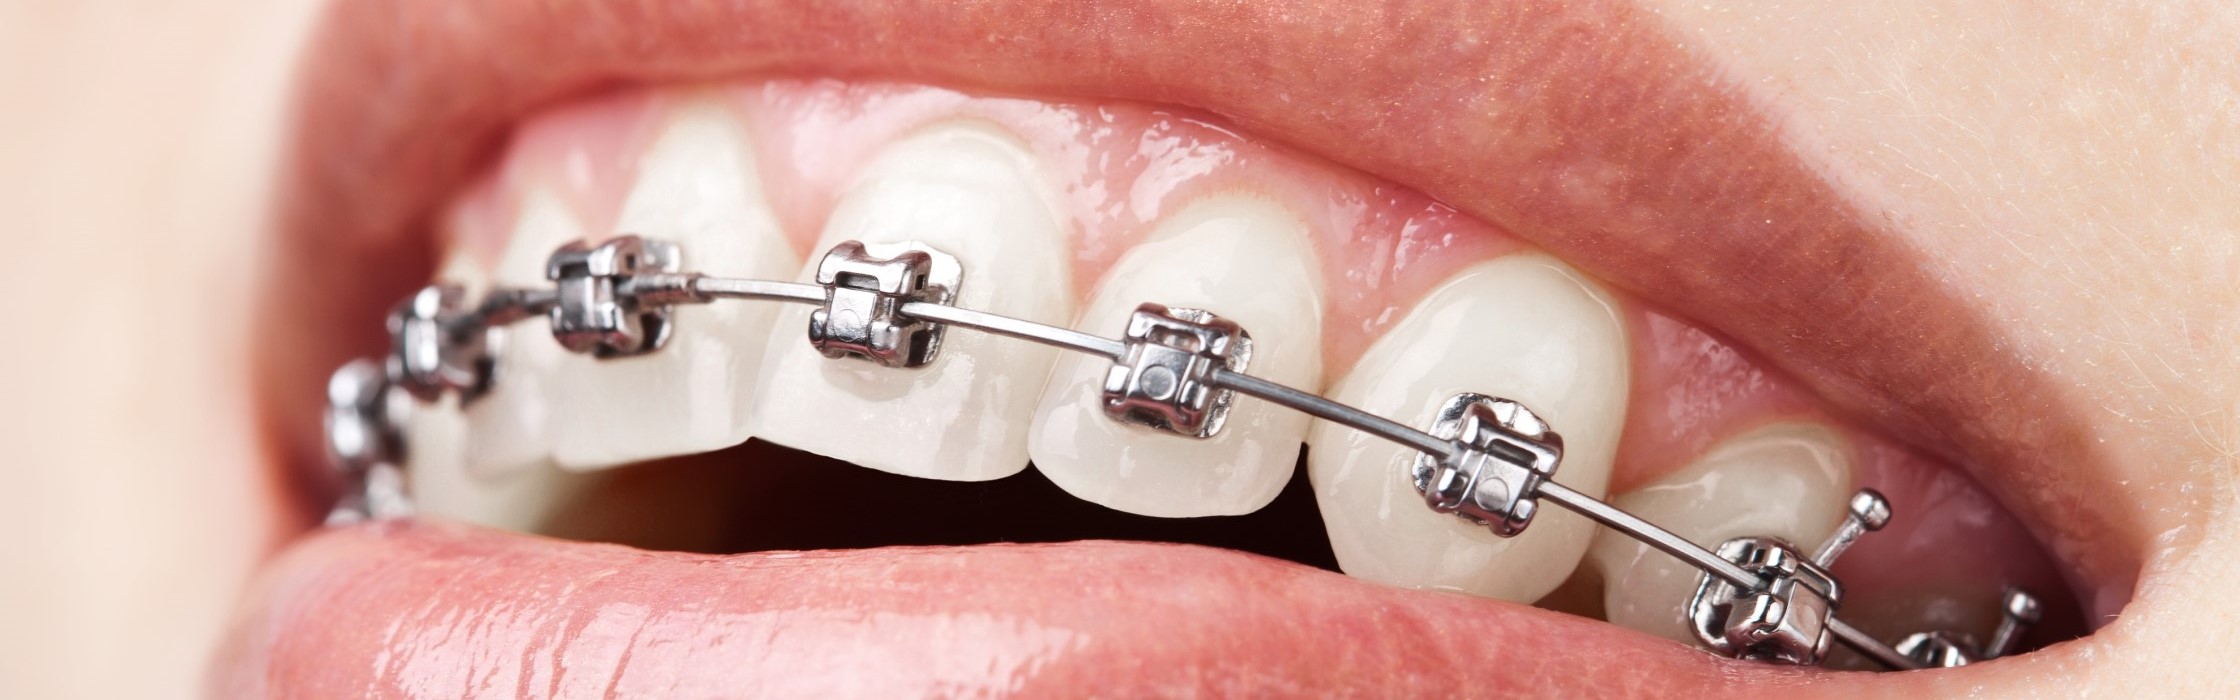 Zahnspange für Erwachsene: Das müssen Sie zur Zahnkorrektur wissen